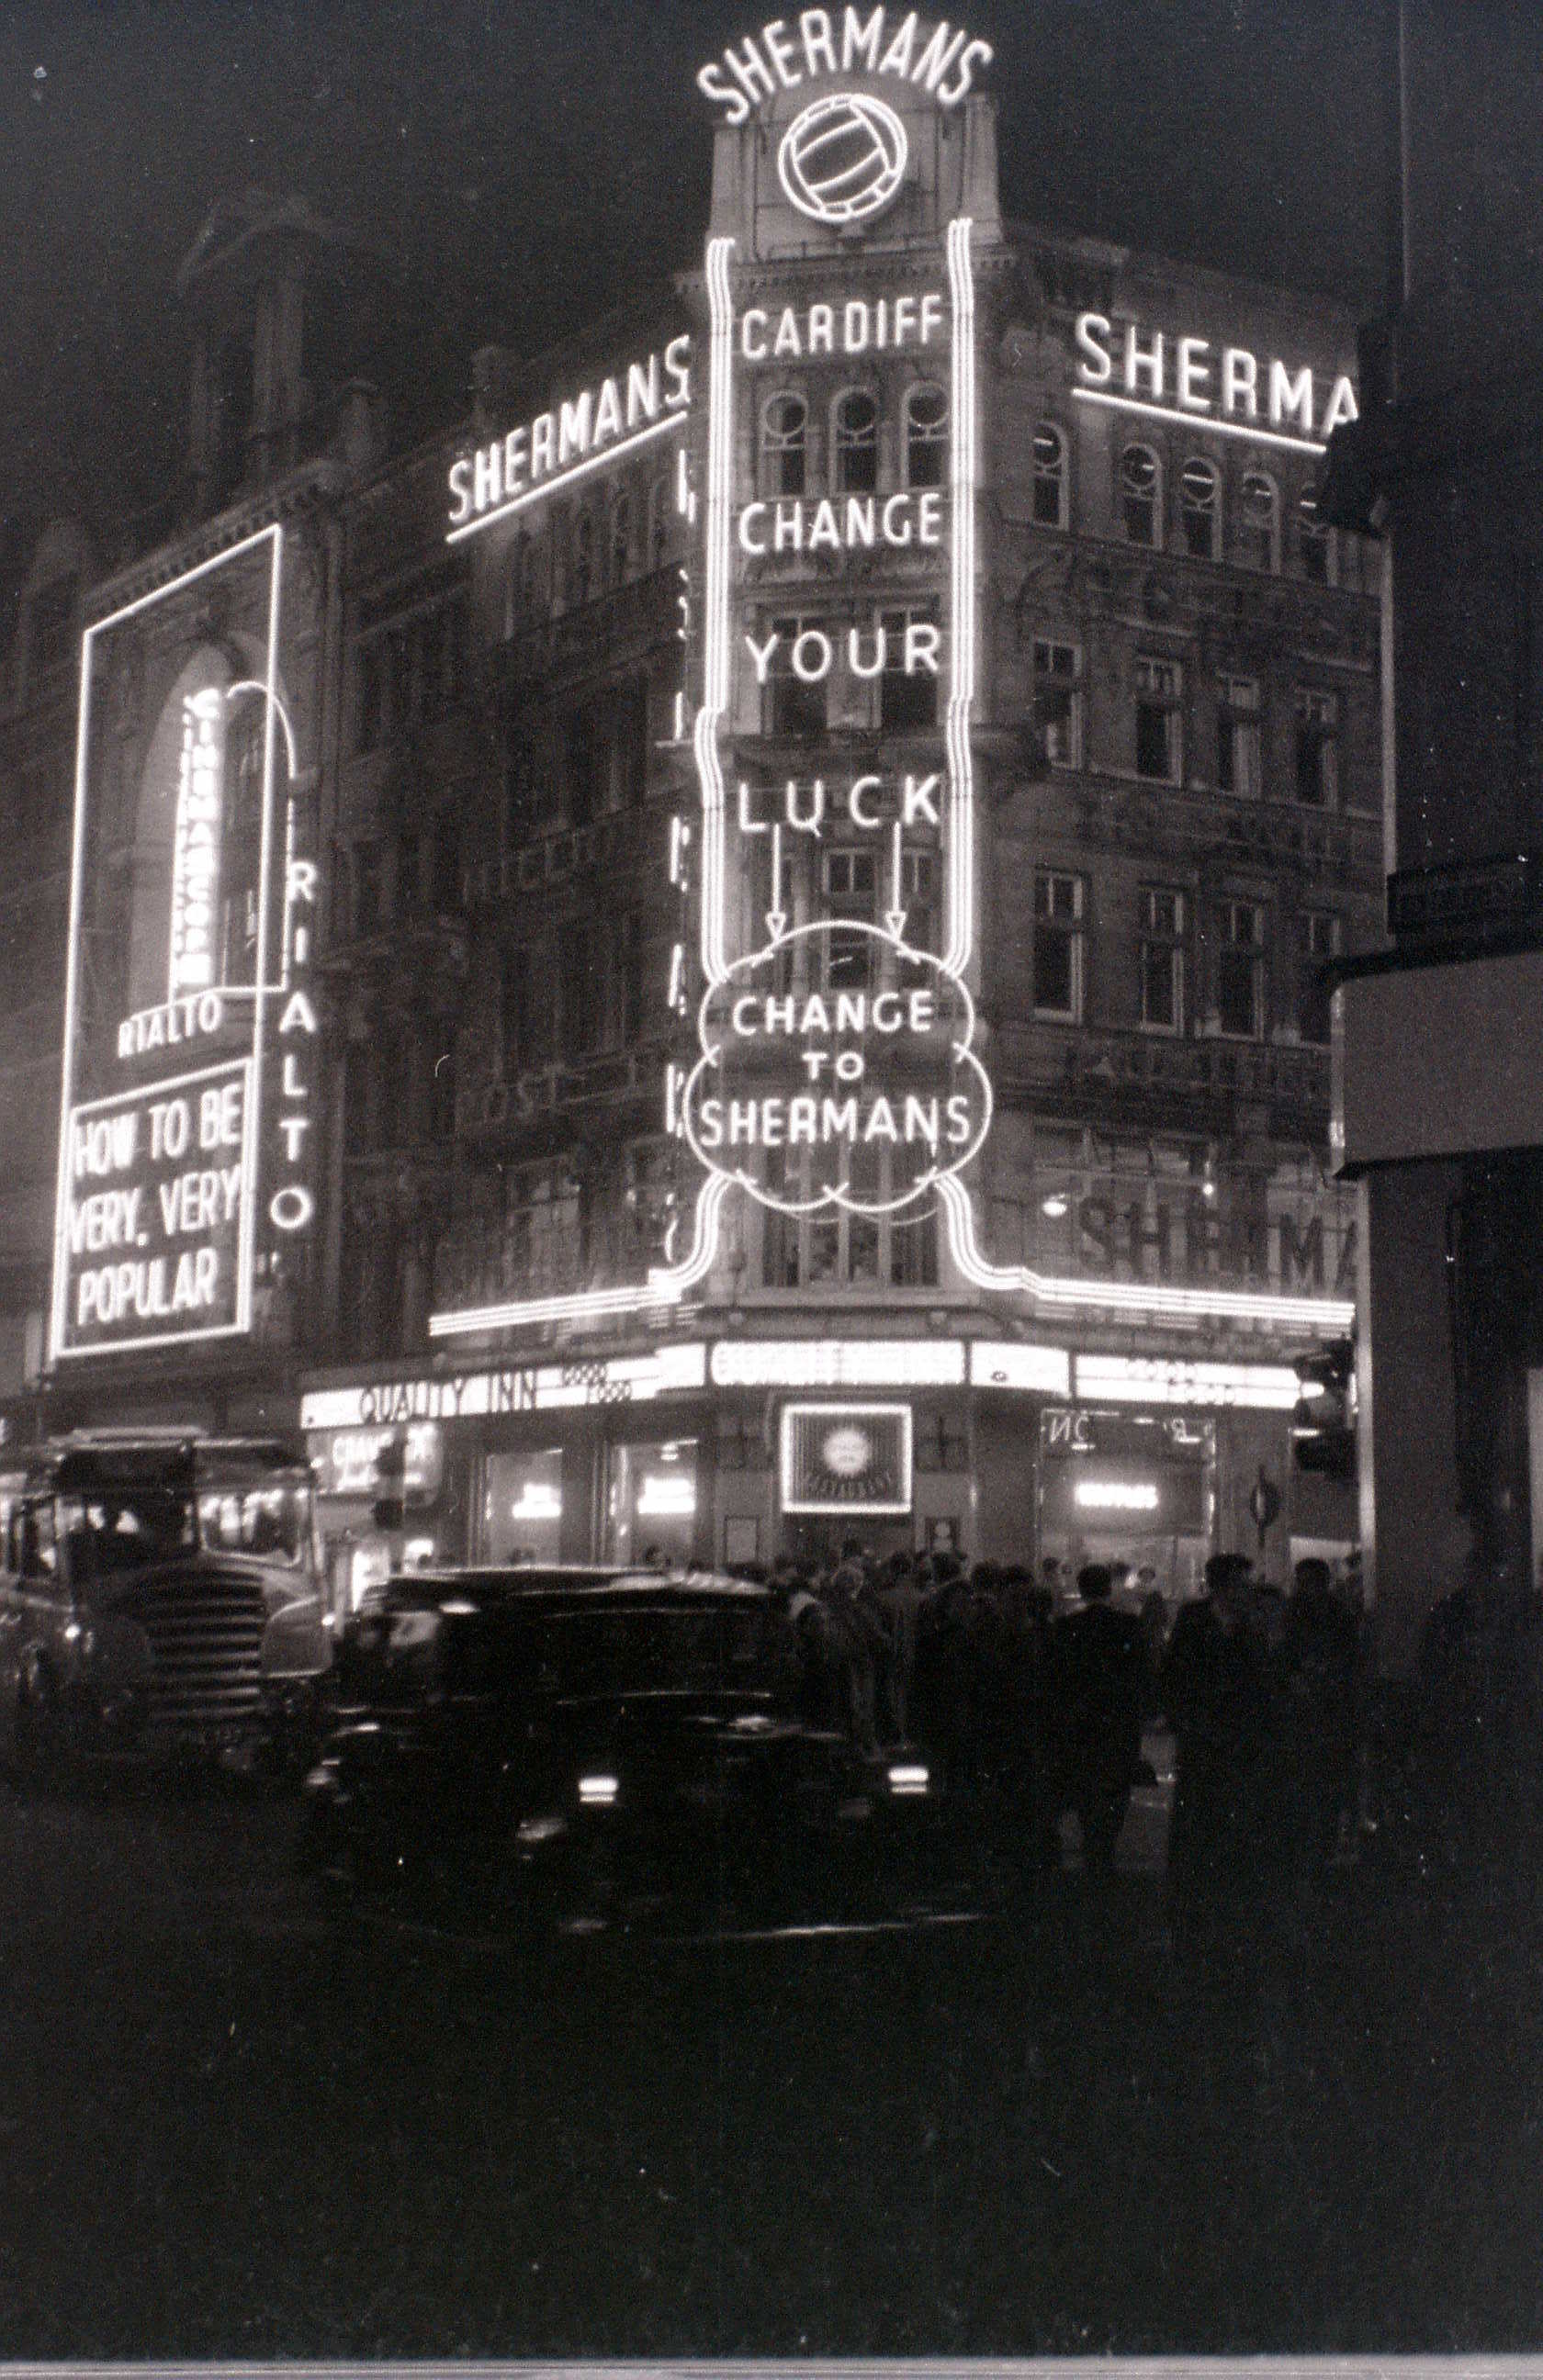 Club Americana et le Flamant rose Blanche sur Wardour Street, entre 1952 et 1965